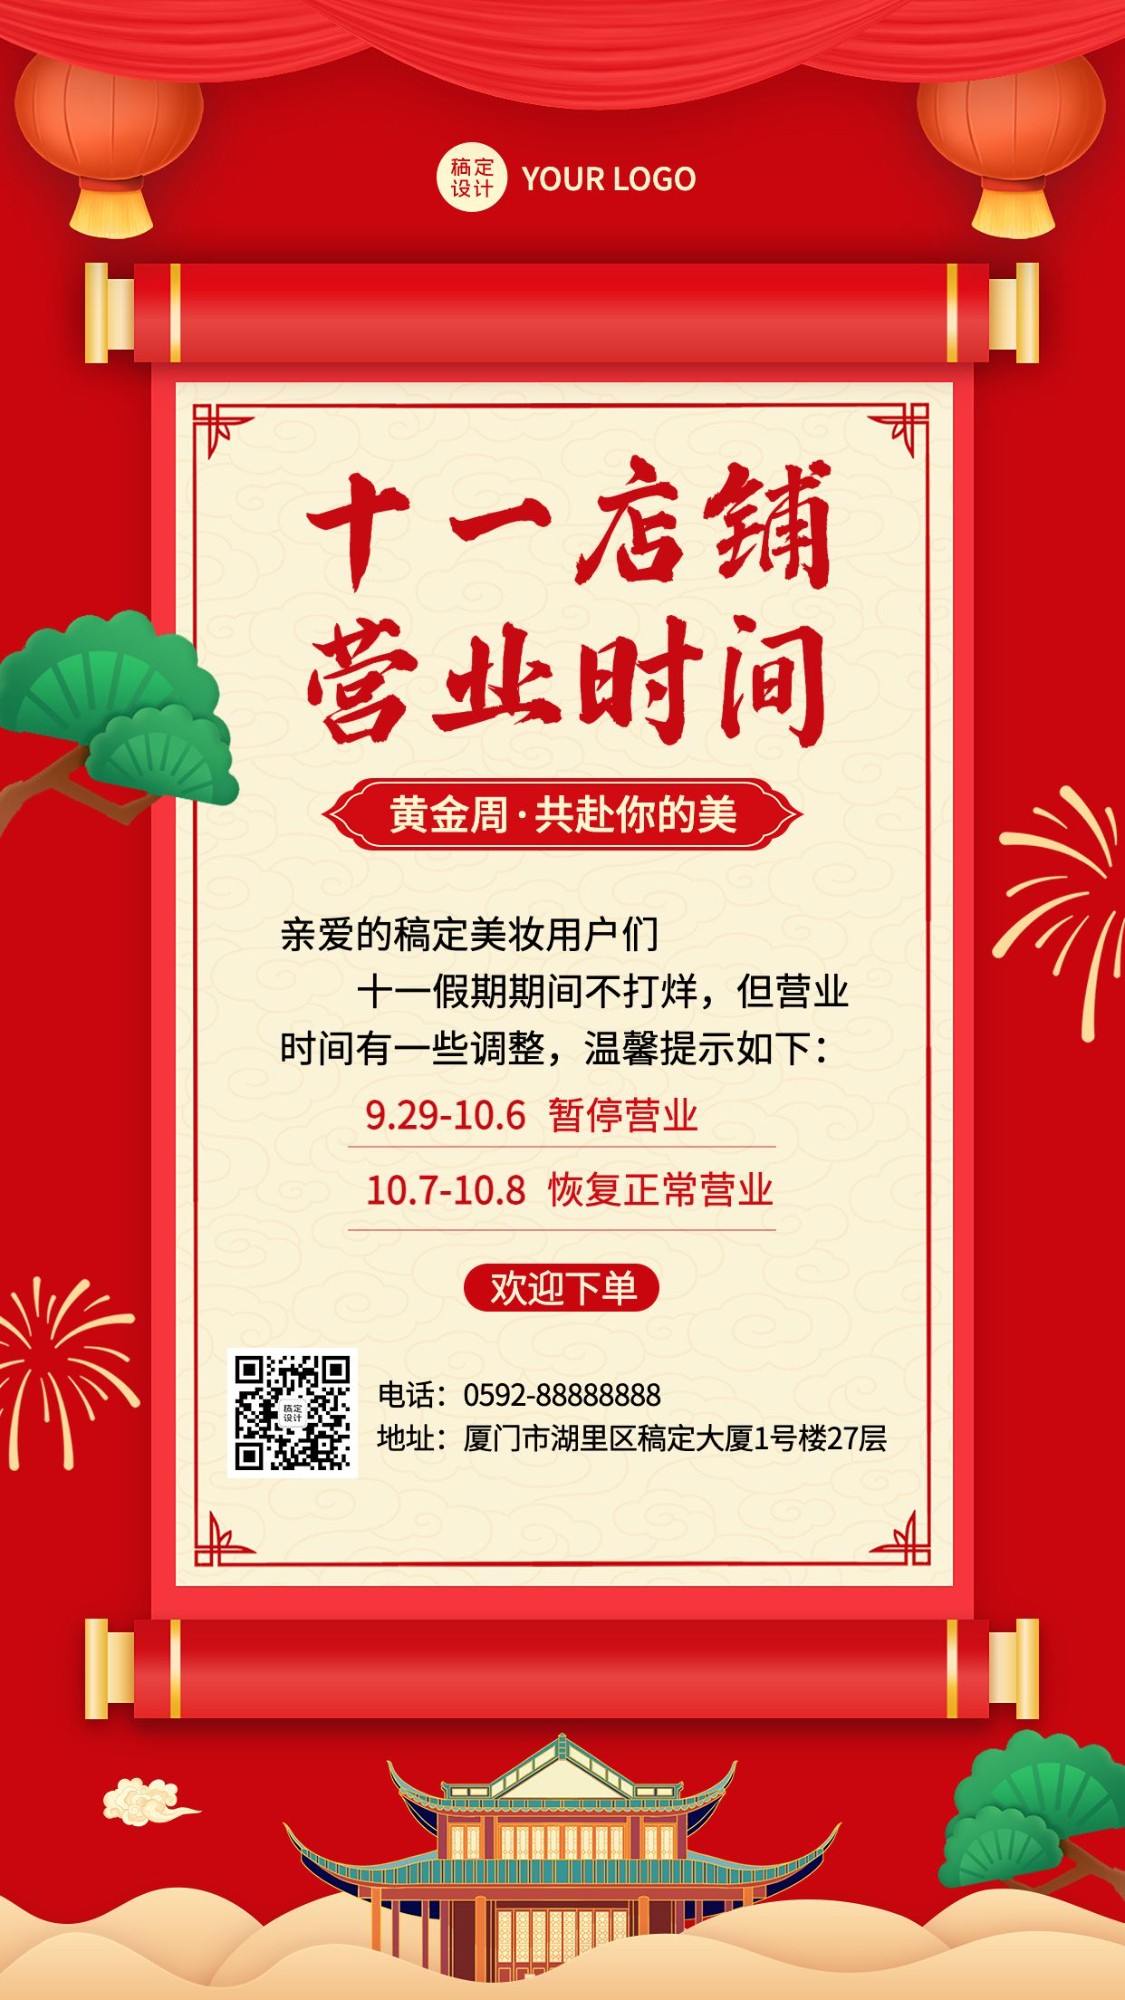 十一国庆微商店铺营业放假通知公告中国风手机海报